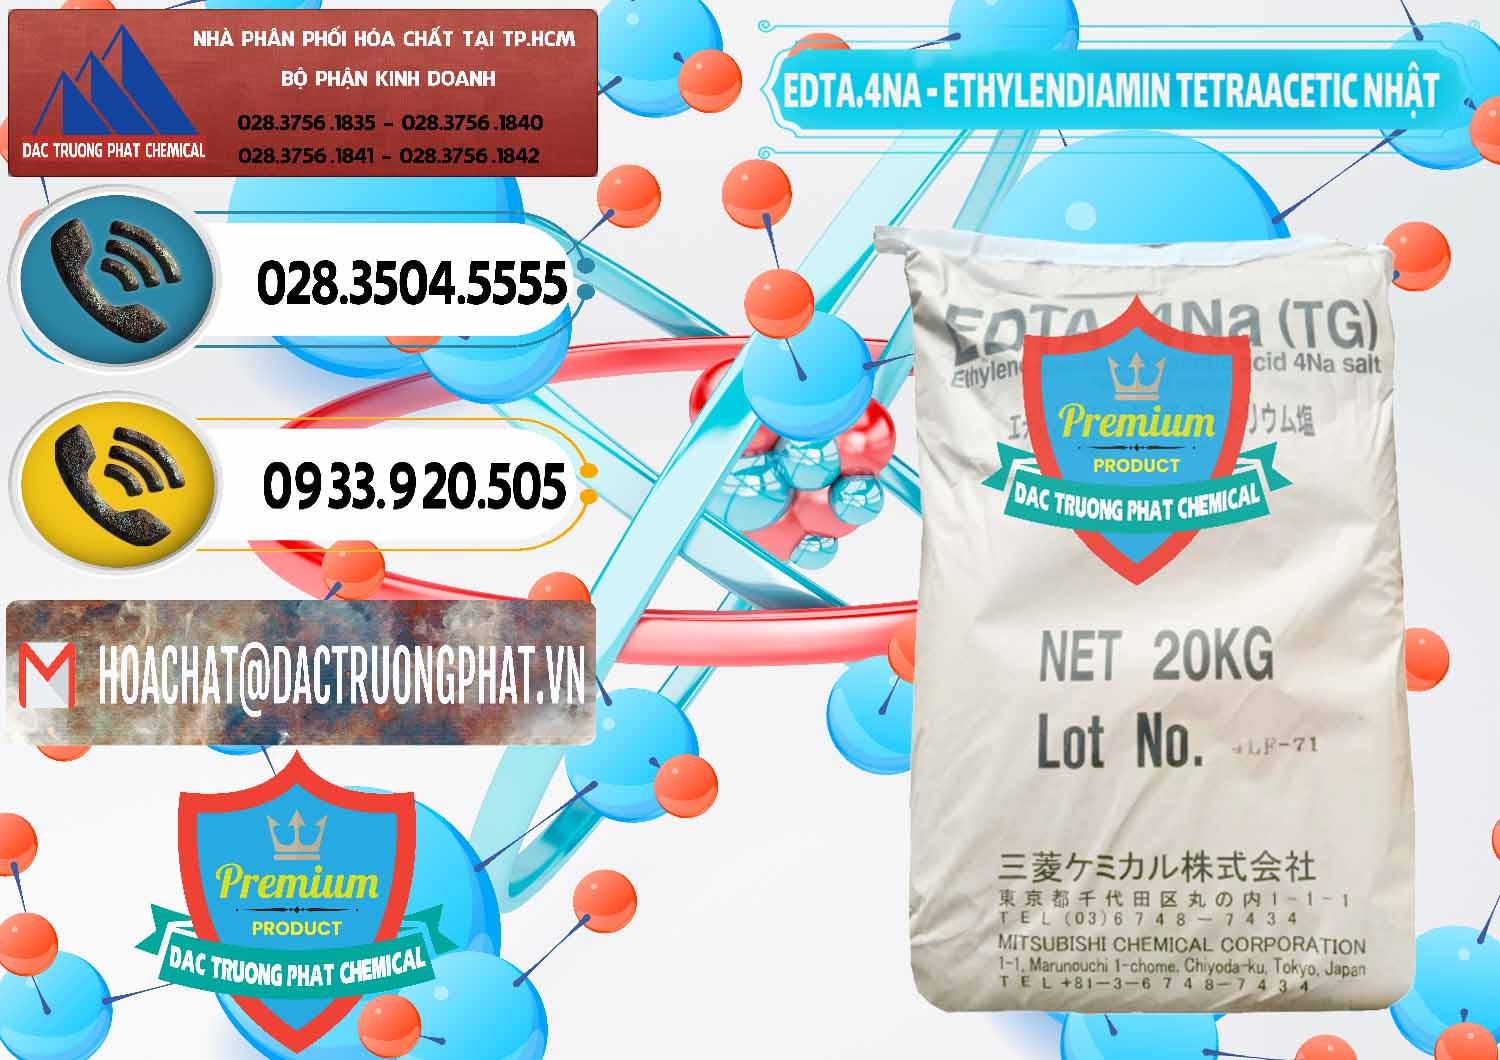 Công ty chuyên phân phối _ bán EDTA 4Na - Ethylendiamin Tetraacetic Nhật Bản Japan - 0482 - Công ty kinh doanh & cung cấp hóa chất tại TP.HCM - hoachatdetnhuom.vn